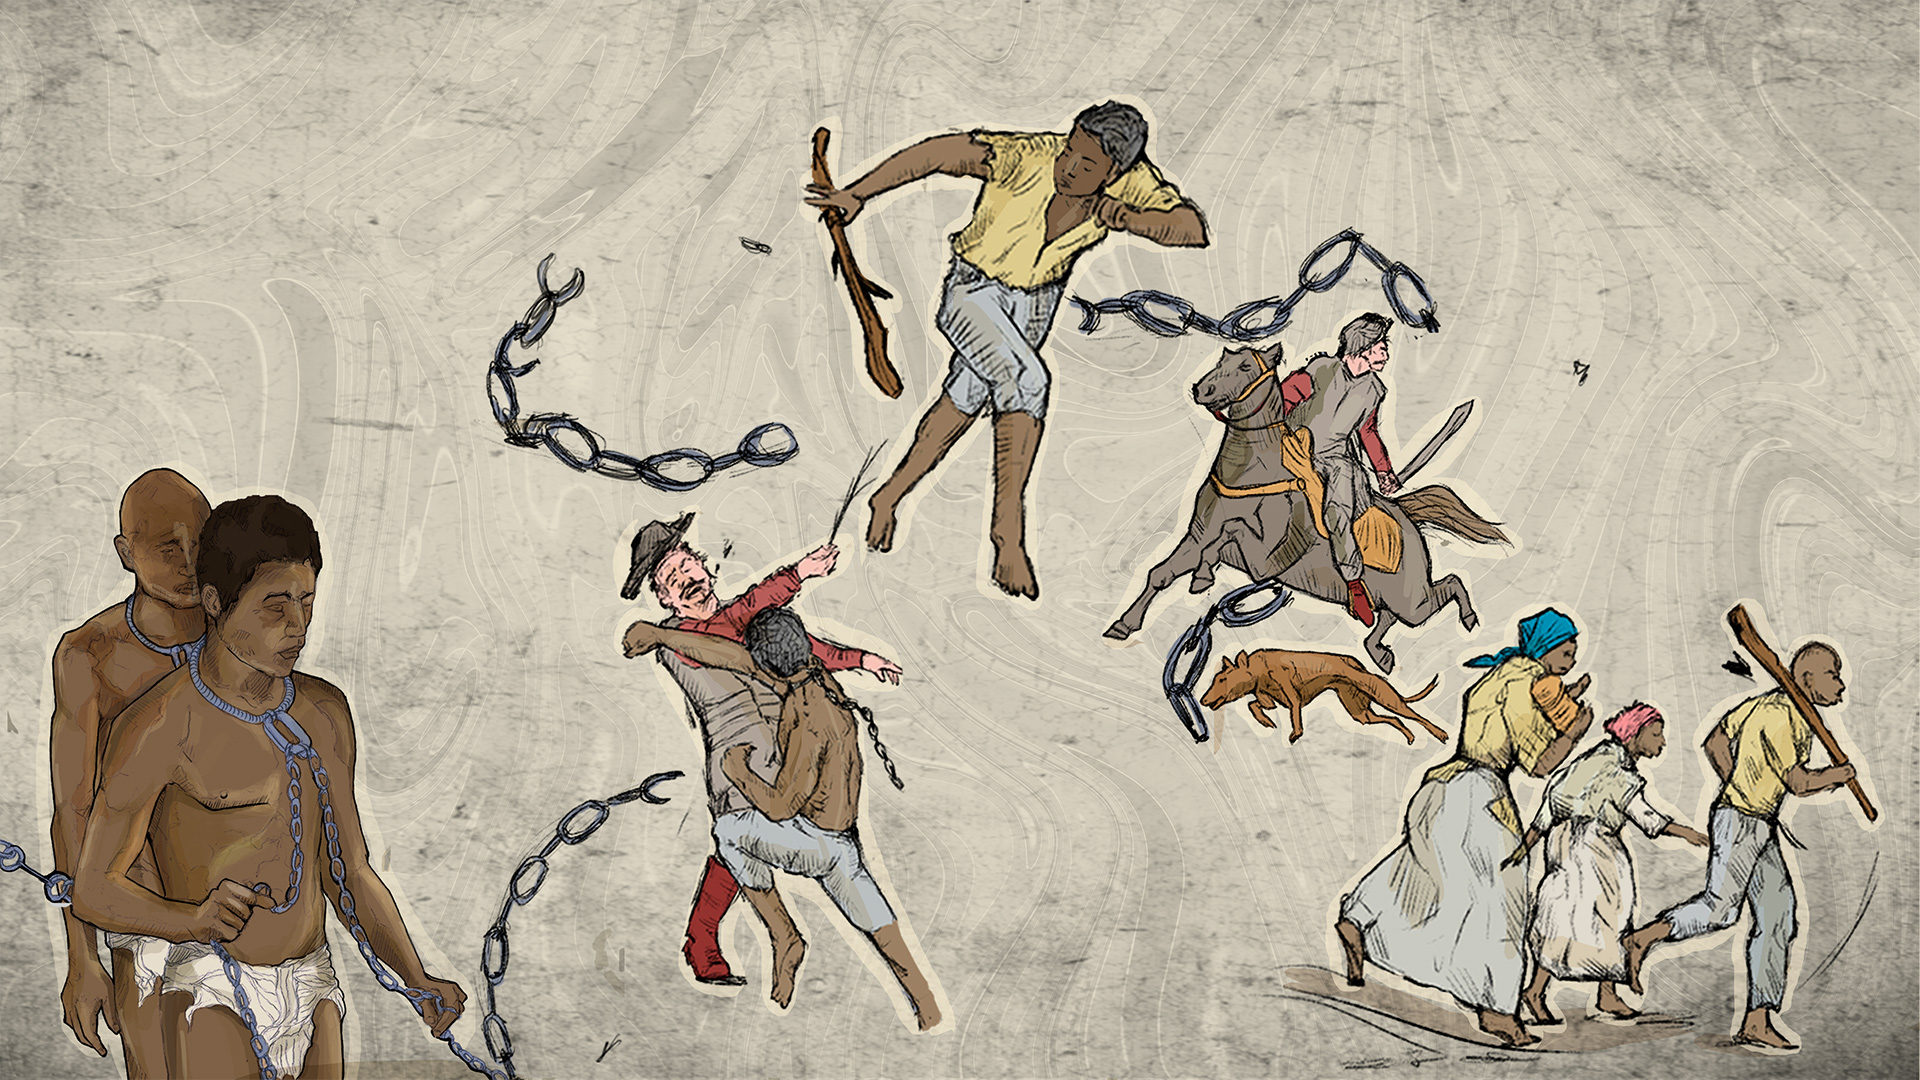 hombres afrodescendientes atados a cadenas y al fondo hombres afrodescendientes luchando y huyendo de los esclavistas